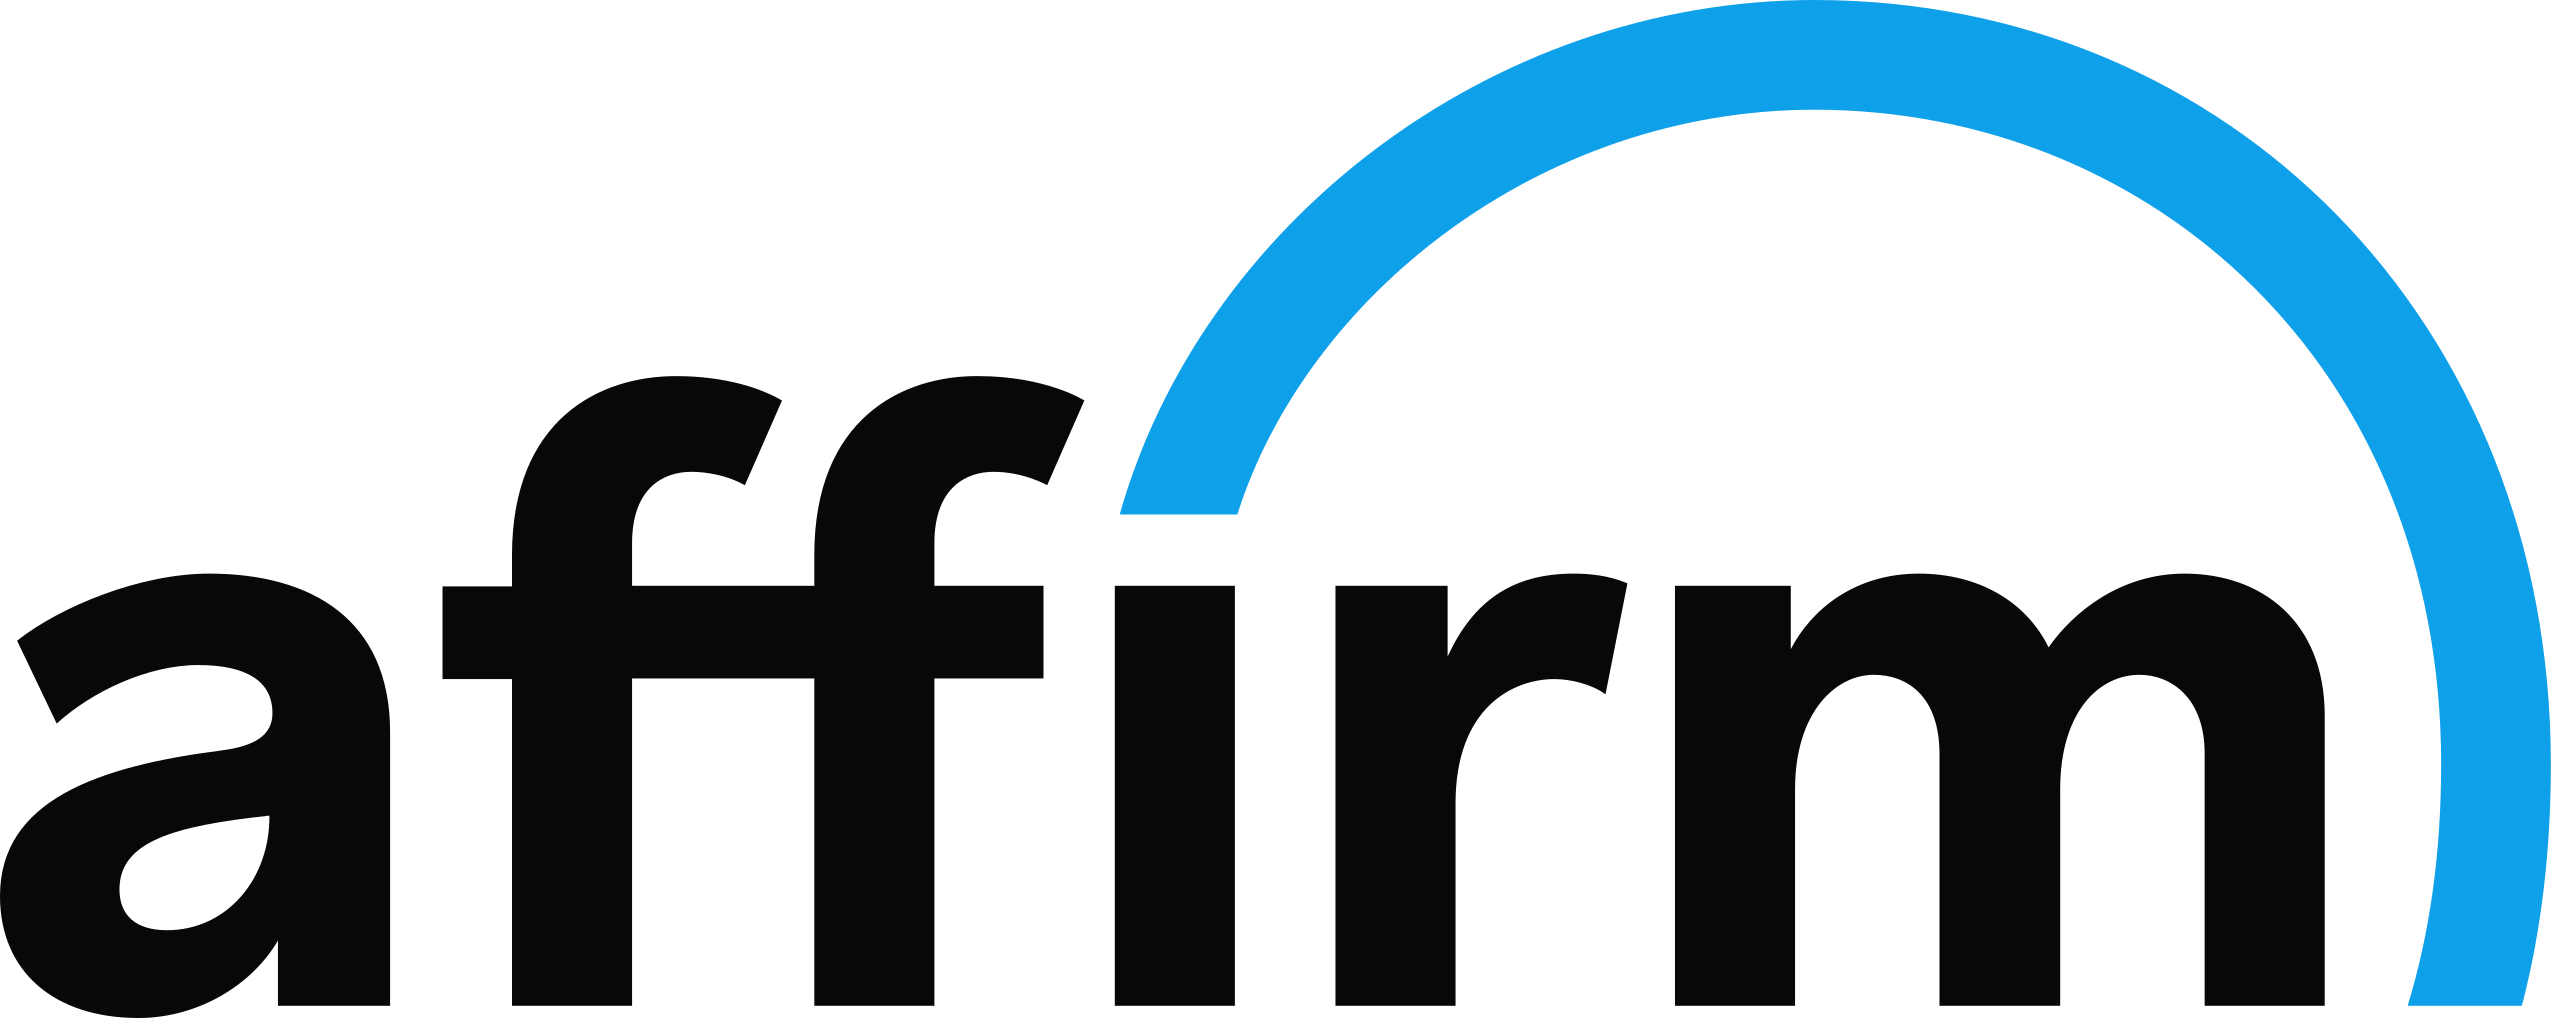 Logo wordmark for Affirm